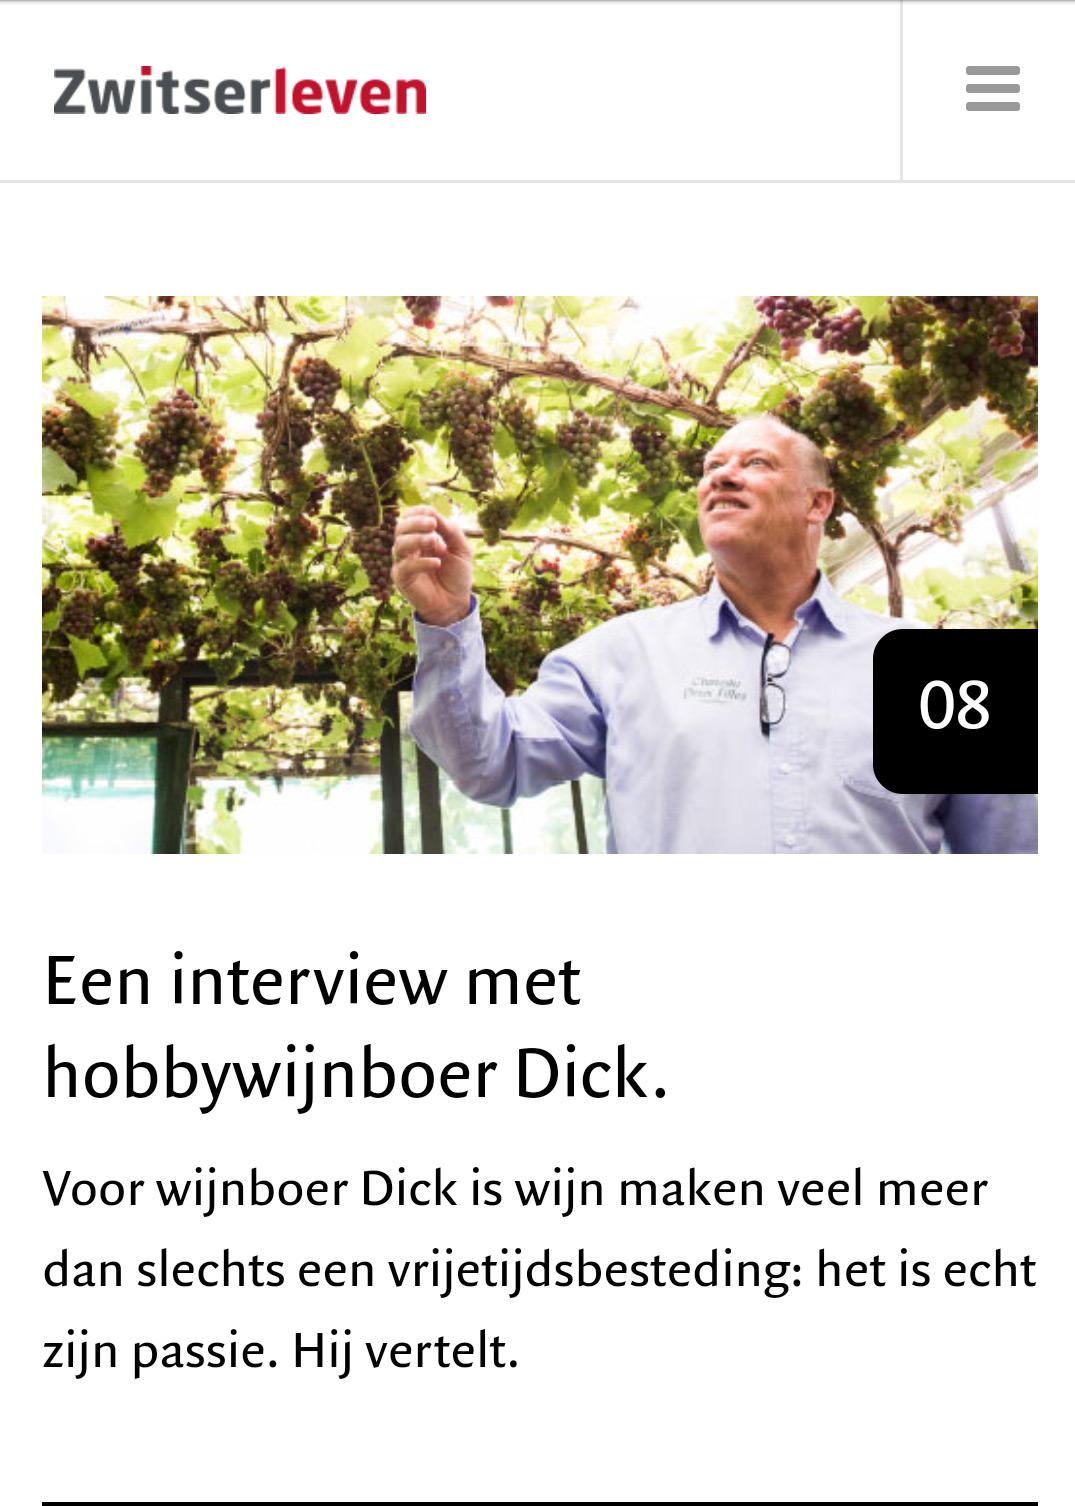 Zwitserleven - Een interview met hobbywijnboer Dick.